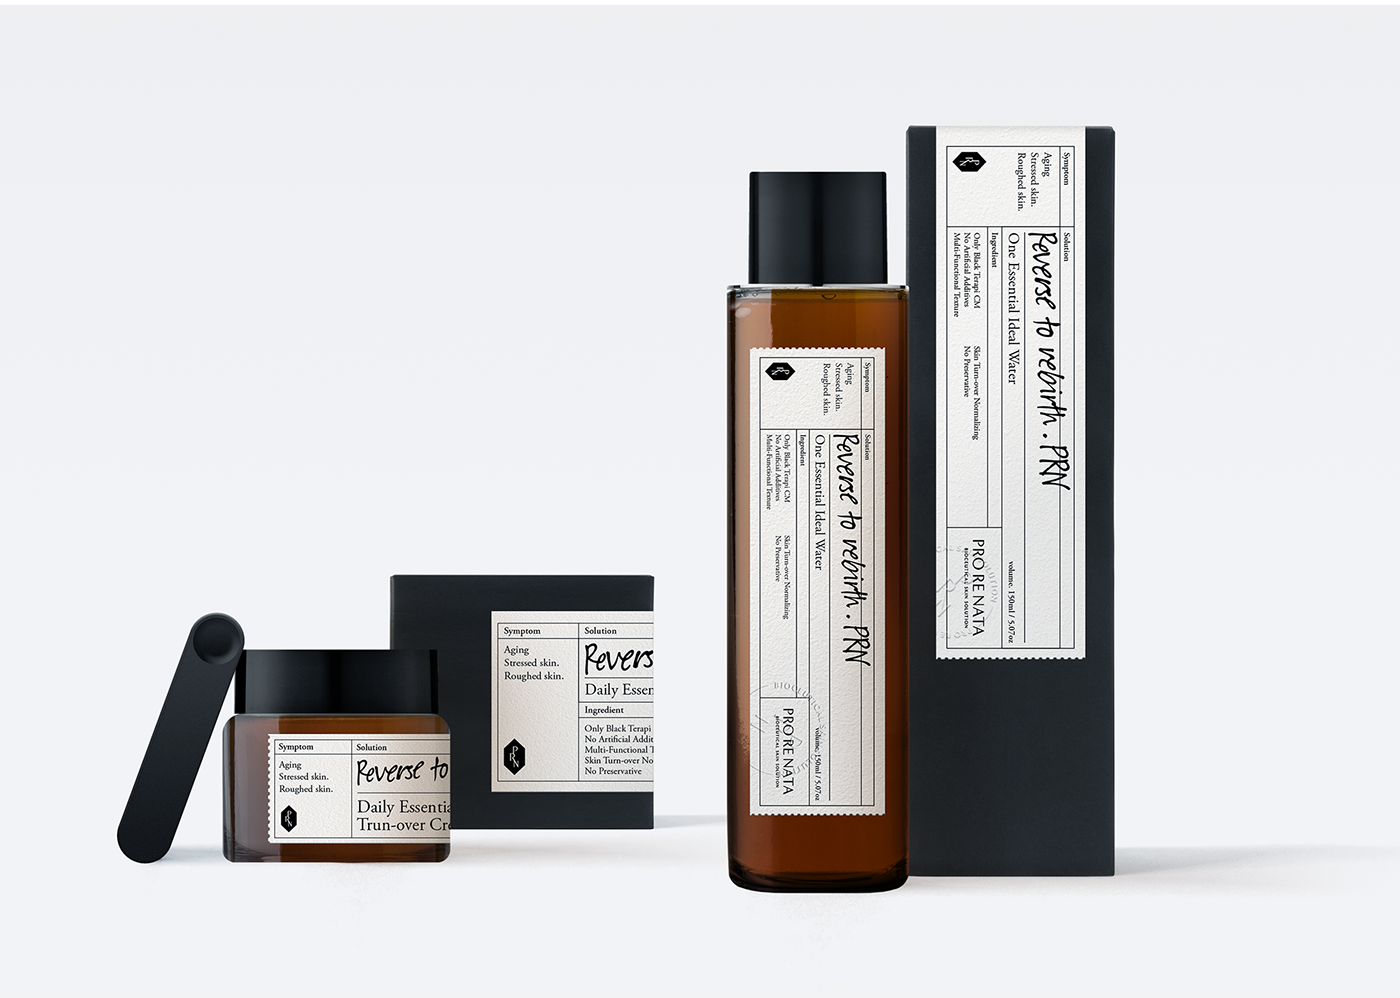 prorenata Cosmetic skincare identity prescription PRN Packaging branding 